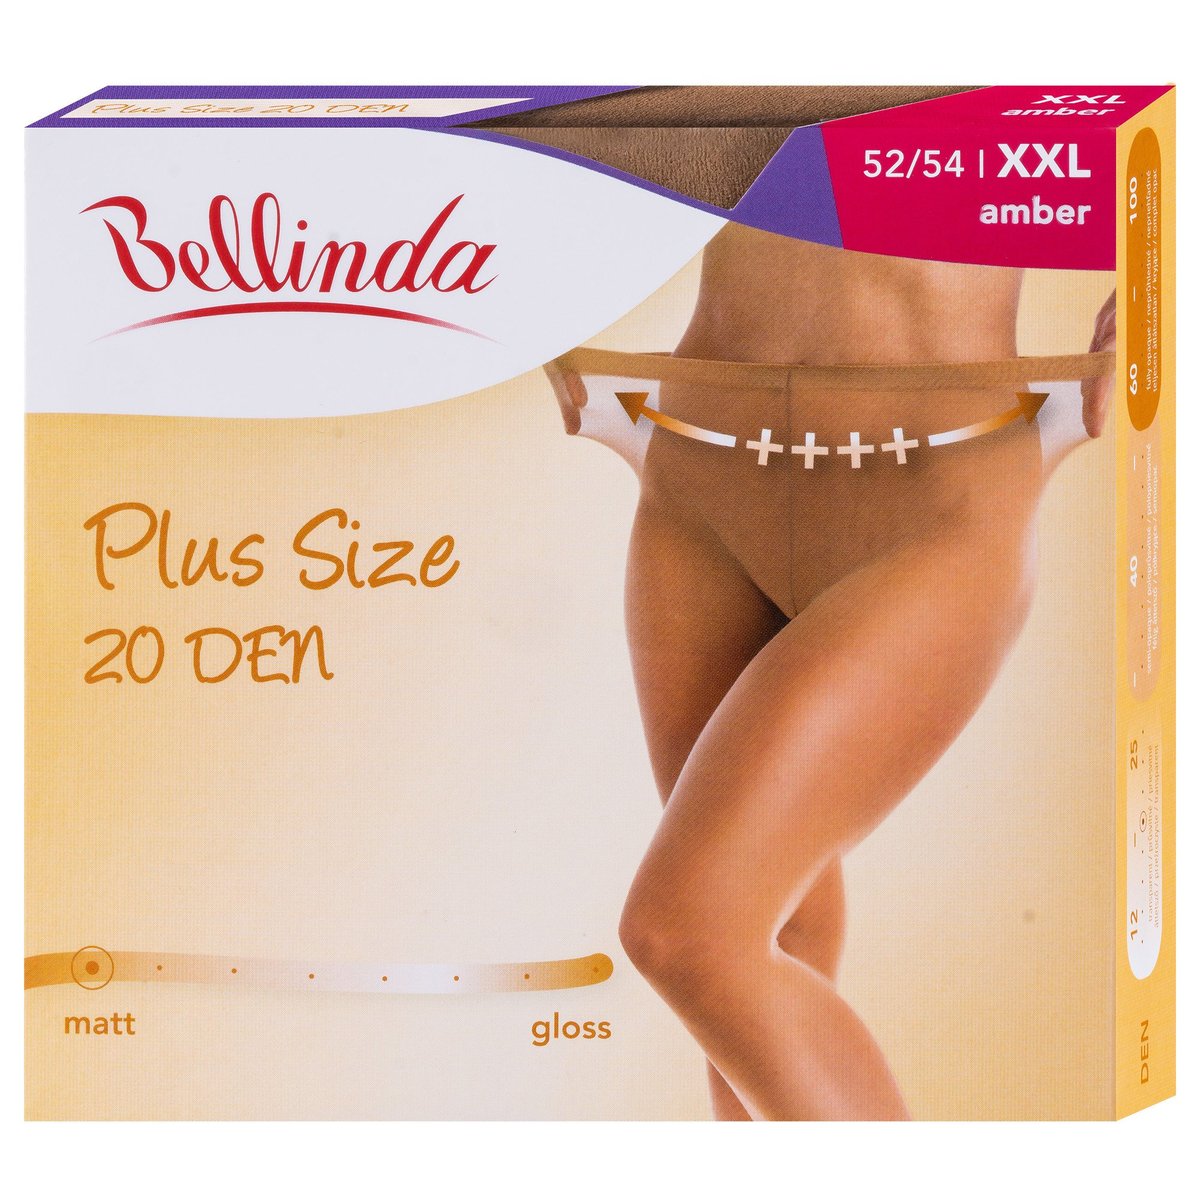 Bellinda Punčochové kalhoty Plus size, tělové, velikost XXL